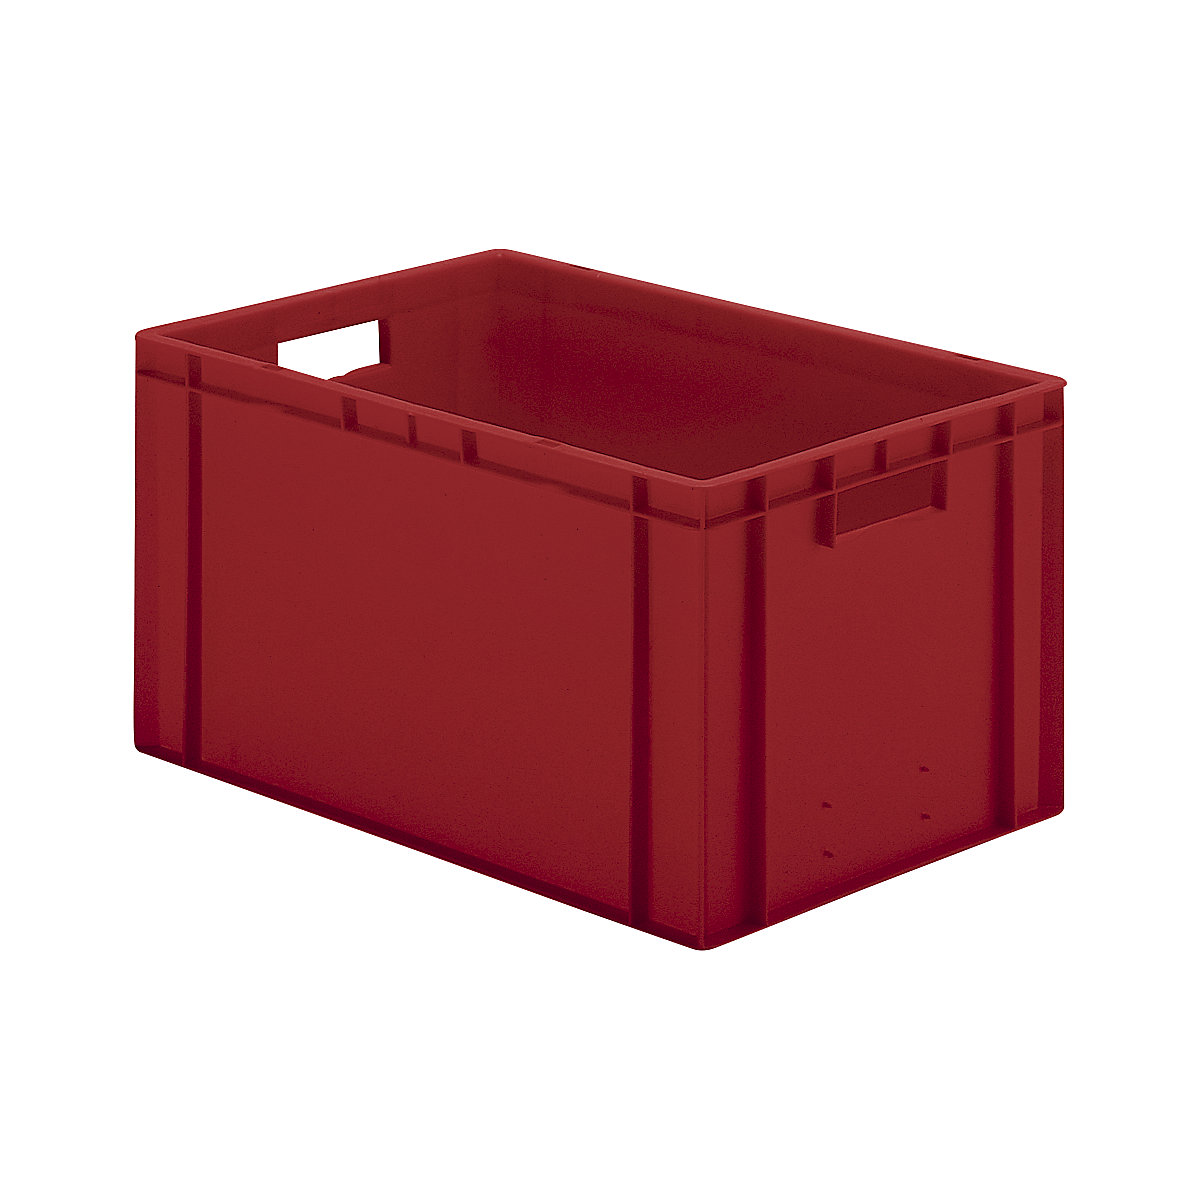 Euro-Format-Stapelbehälter, Wände und Boden geschlossen, LxBxH 600 x 400 x 320 mm, rot, VE 5 Stk